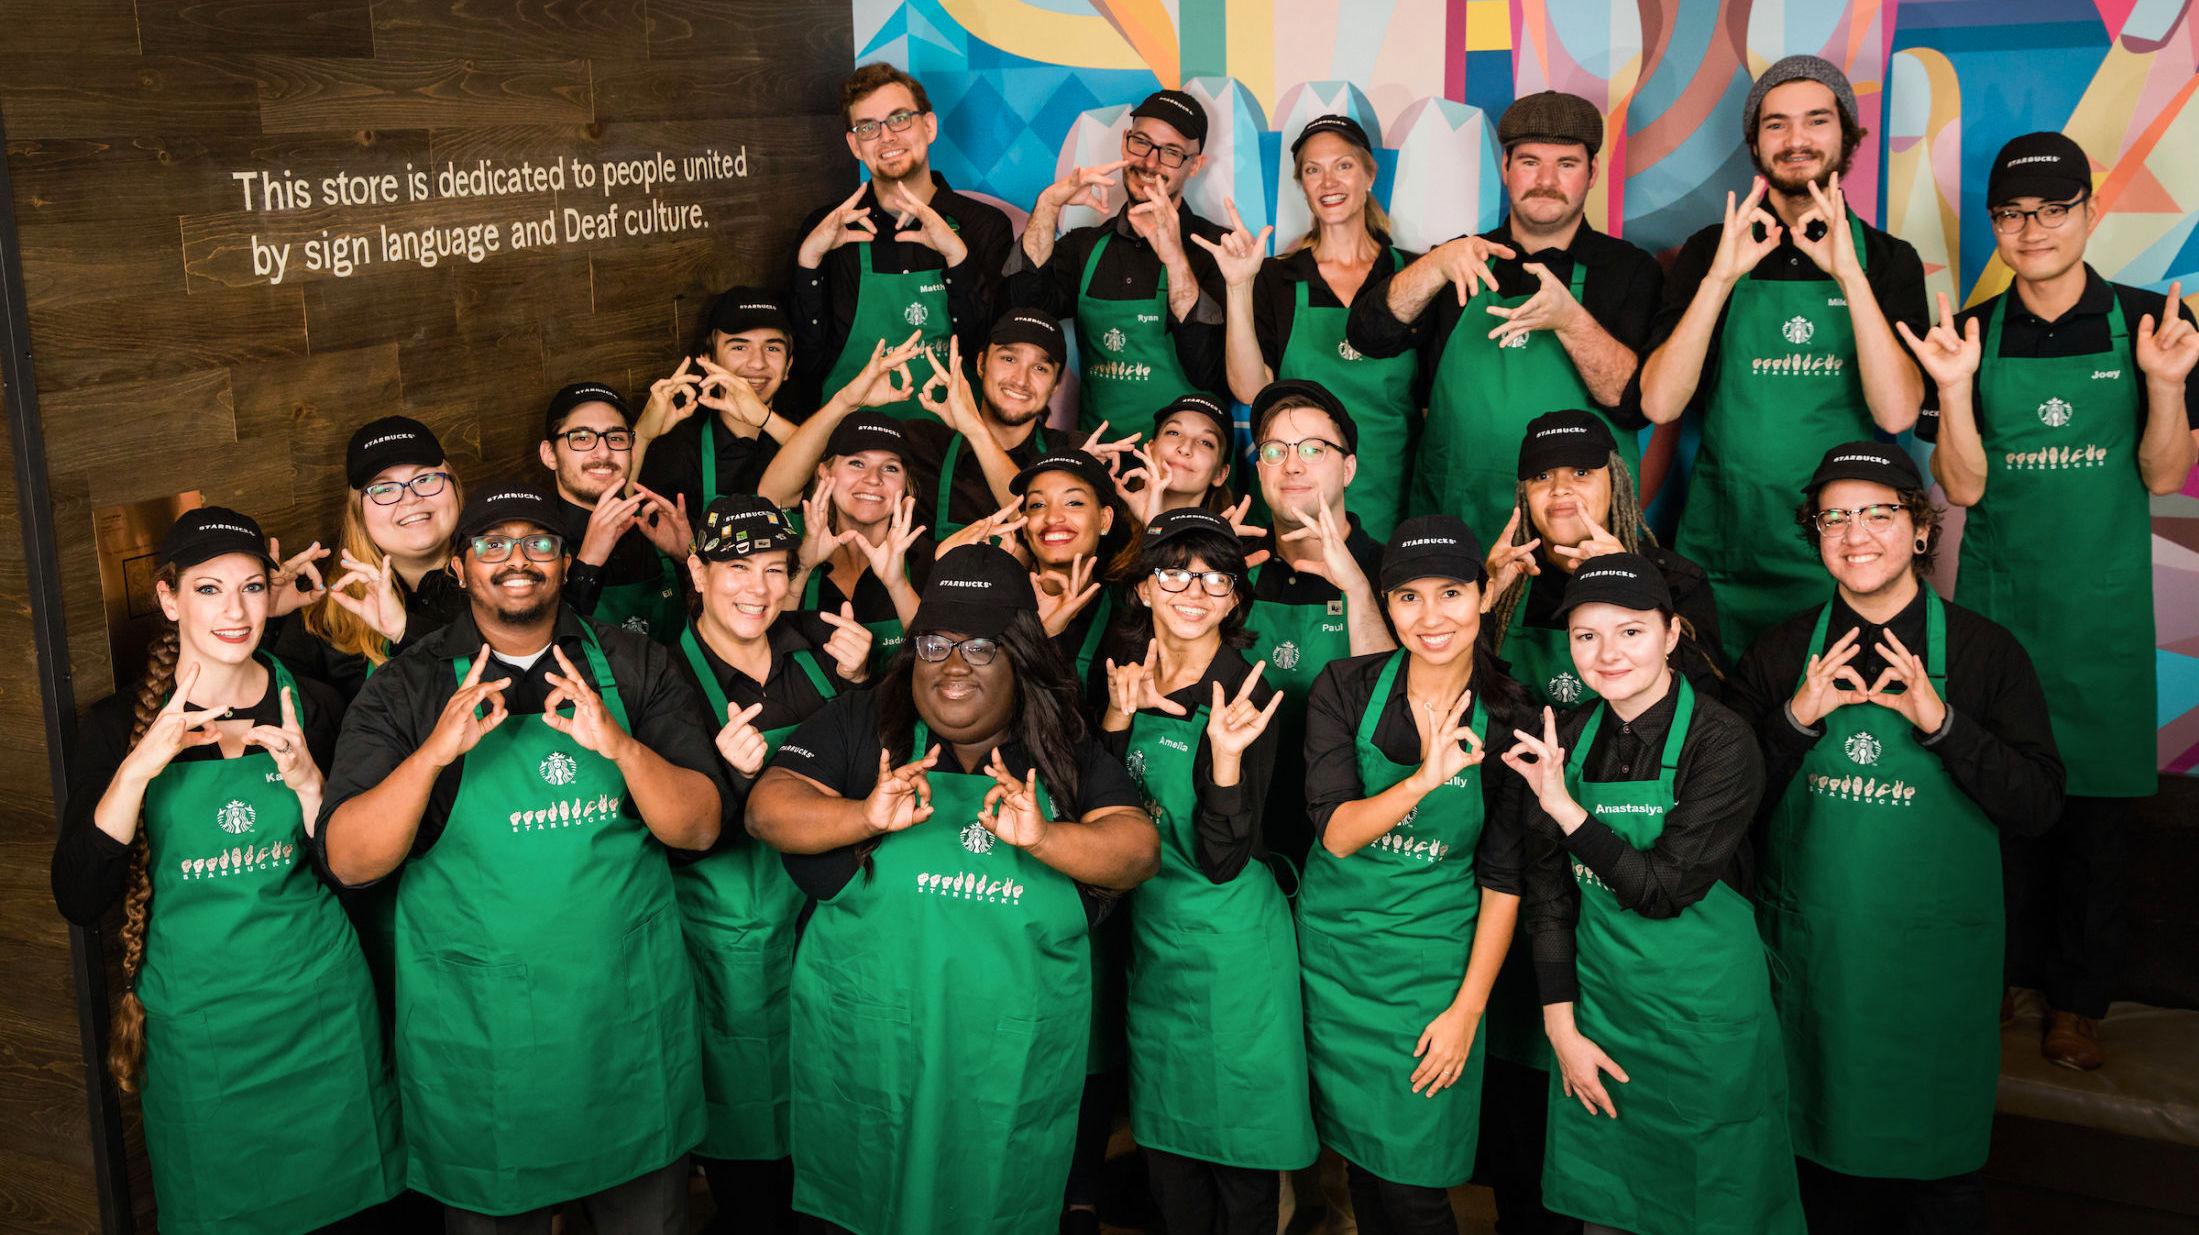 TEGNSPRÅK: Alle de ansatte på Starbucks' nye avdeling i Washington DC bruker tegnspråk, enten de selv er hørselshemmede eller ei. Foto: Joshua Trujillo/Starbucks